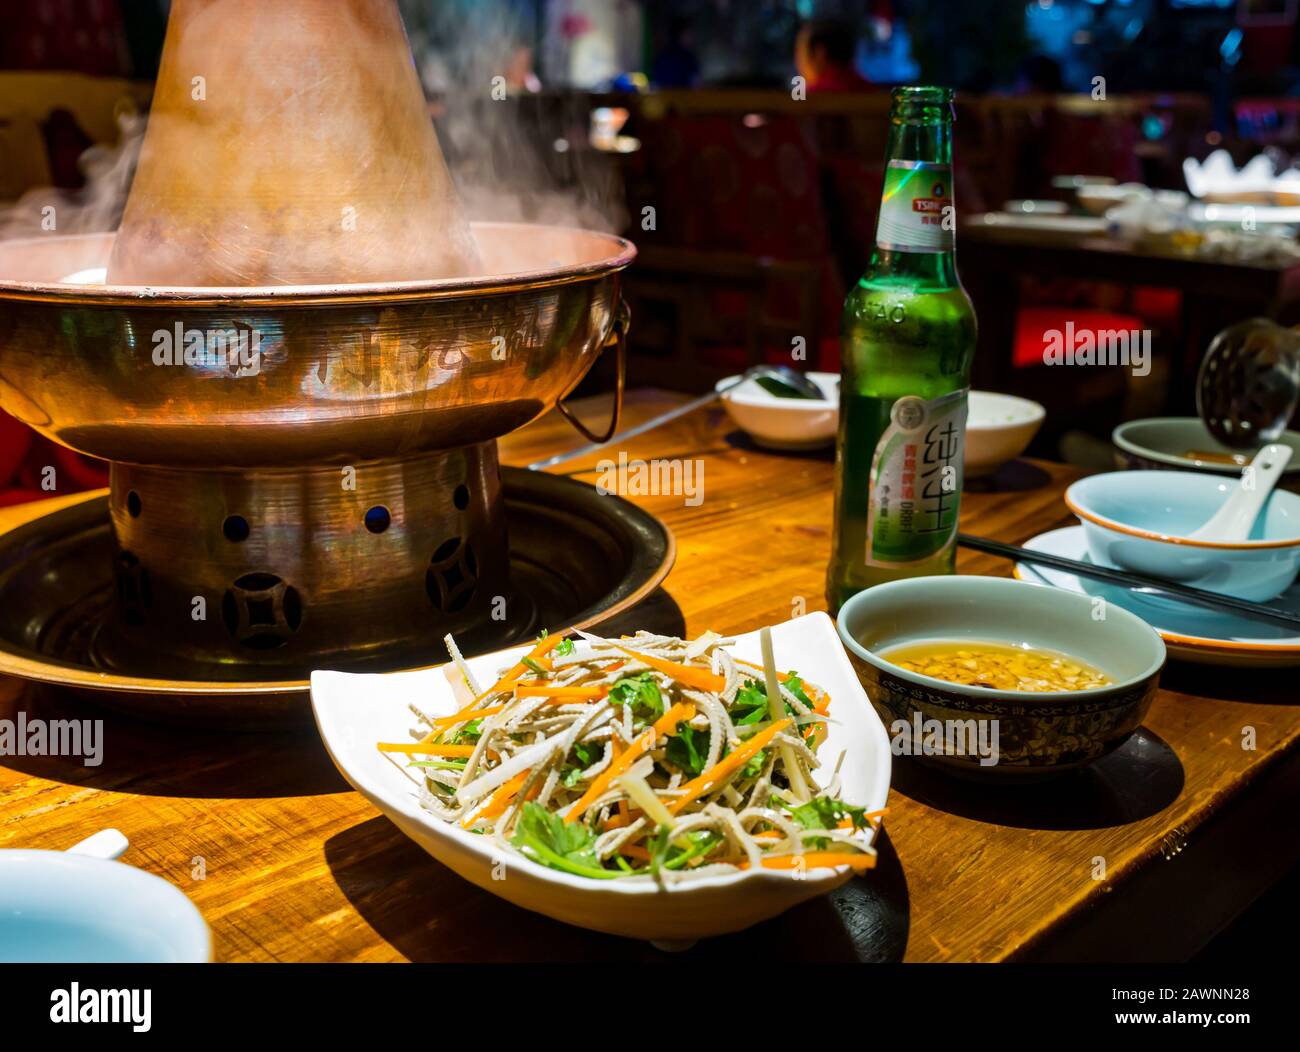 Mongolischer Hotspot wird im Restaurant mit lokalem Tsingtao-Bier, Xi Cheng Hutong District, Peking, China, Asien serviert Stockfoto